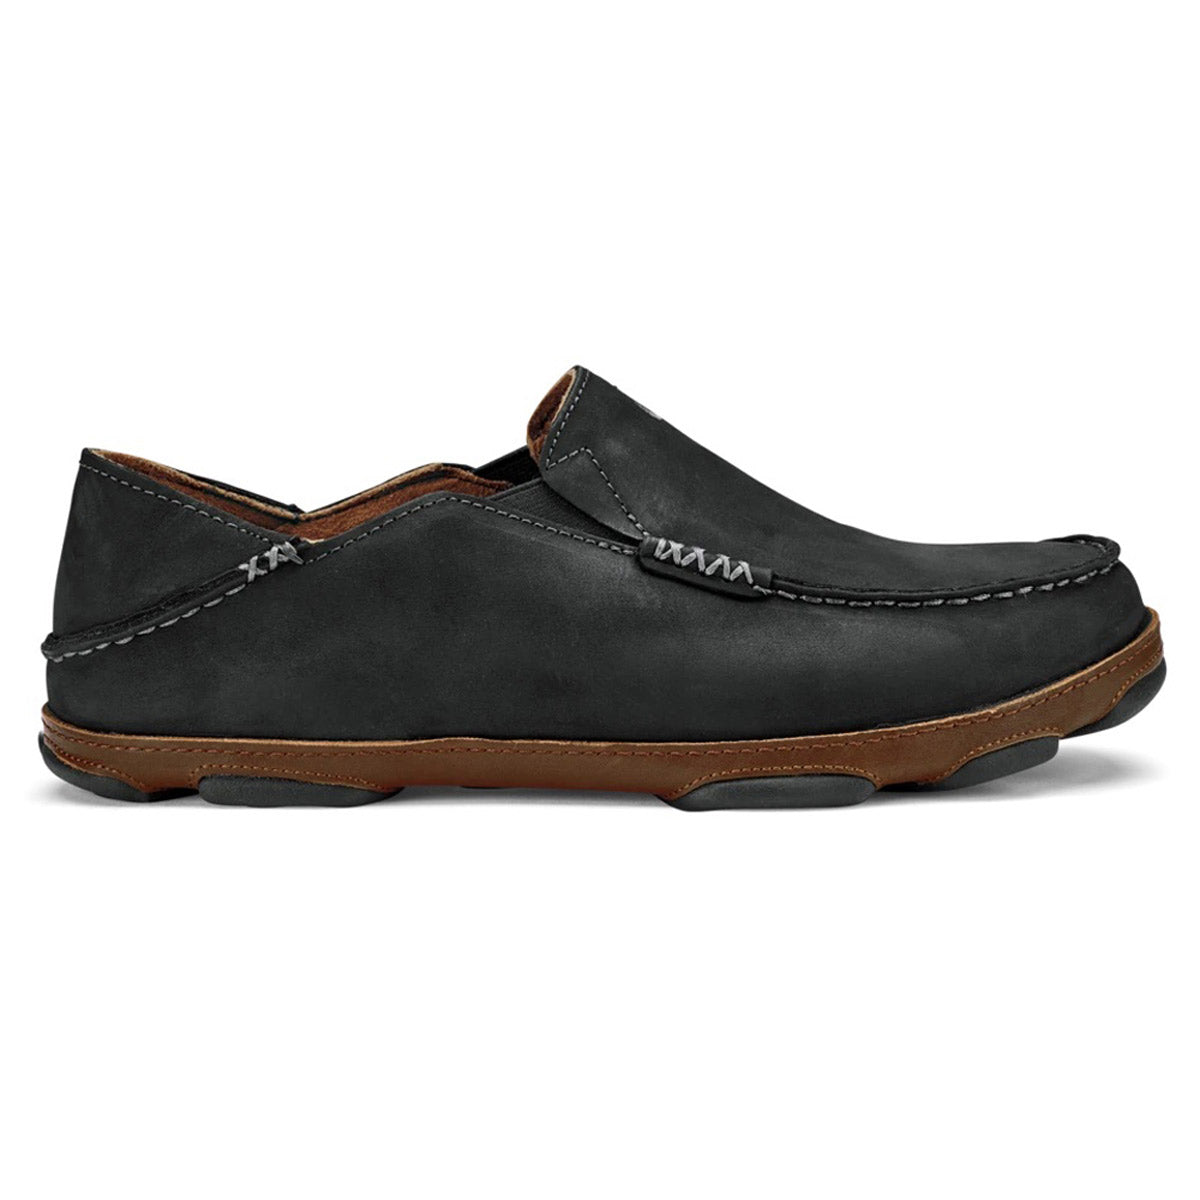 Olukai Olukai Moloa Slip-On Black men&#39;s loafer with brown sole on a white background.